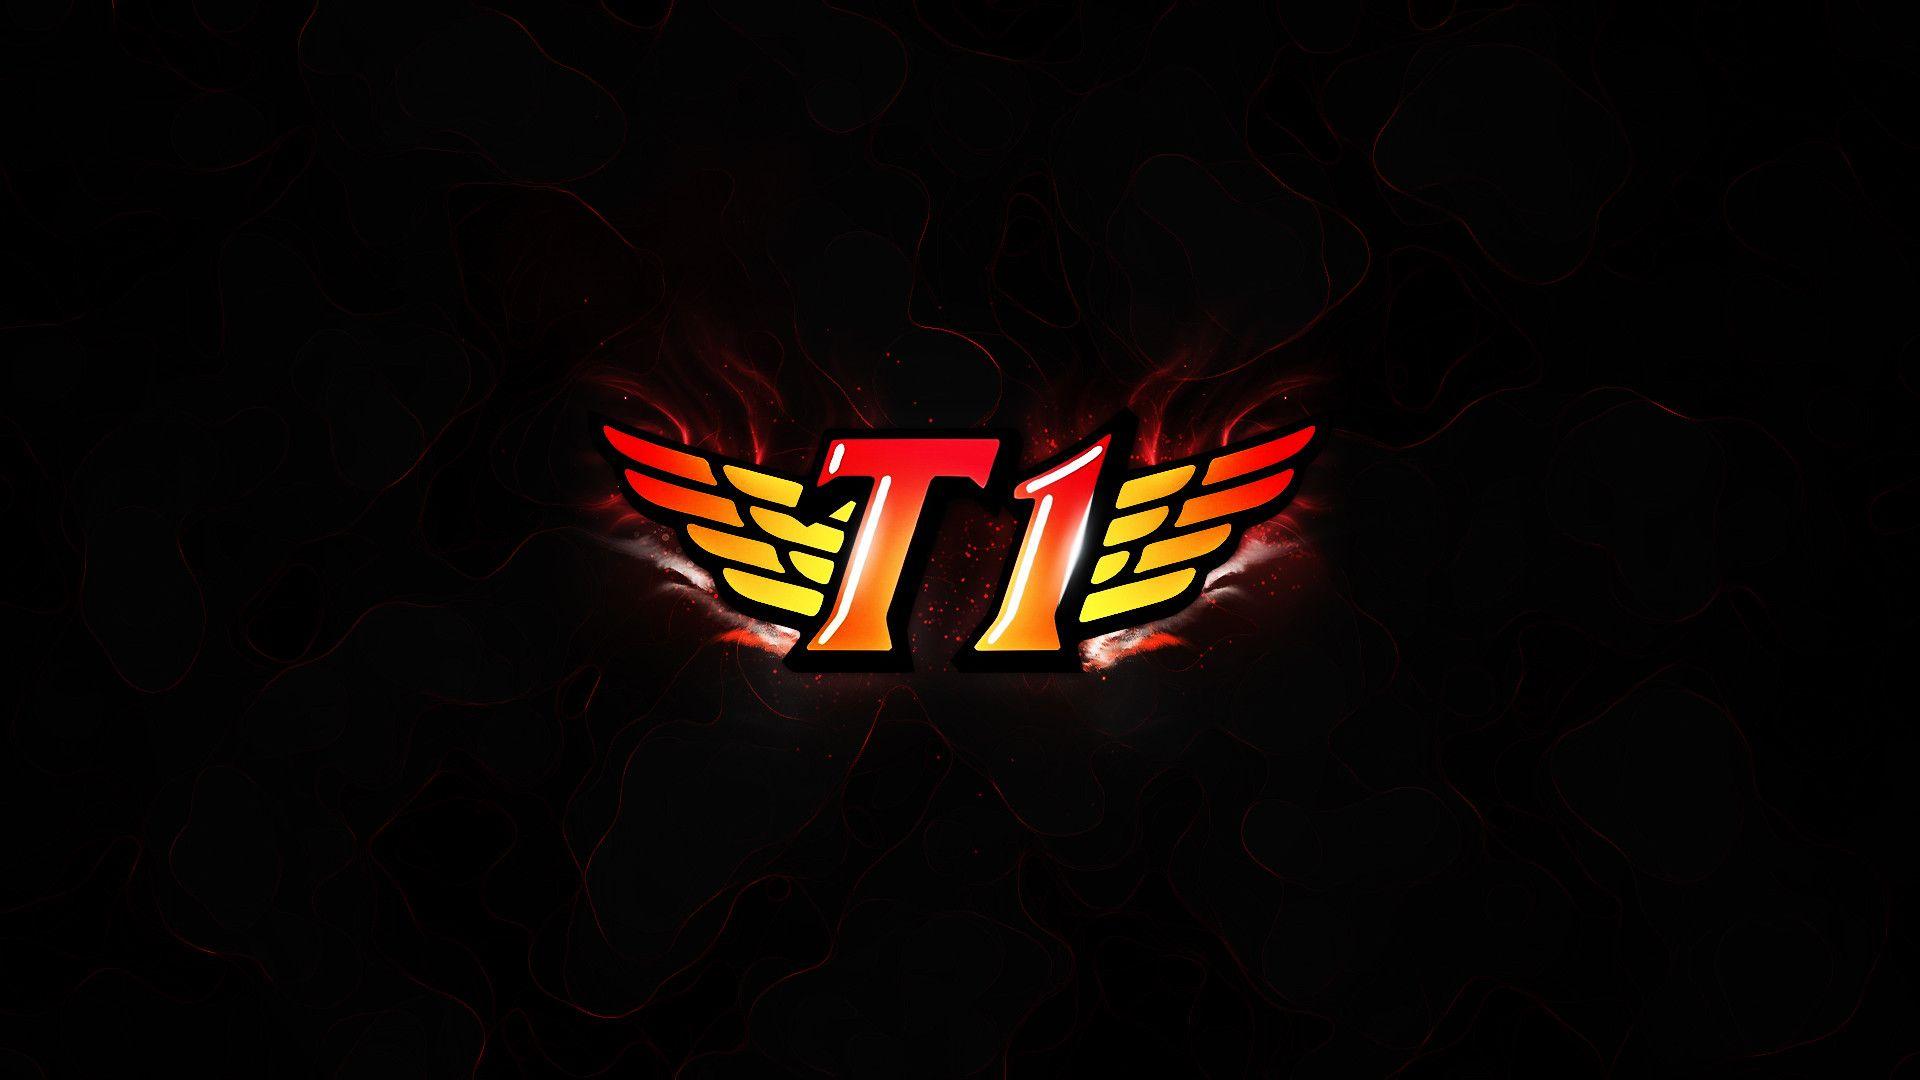 T1 Logo - SK Telecom T1 logo HD Wallpaperx1080